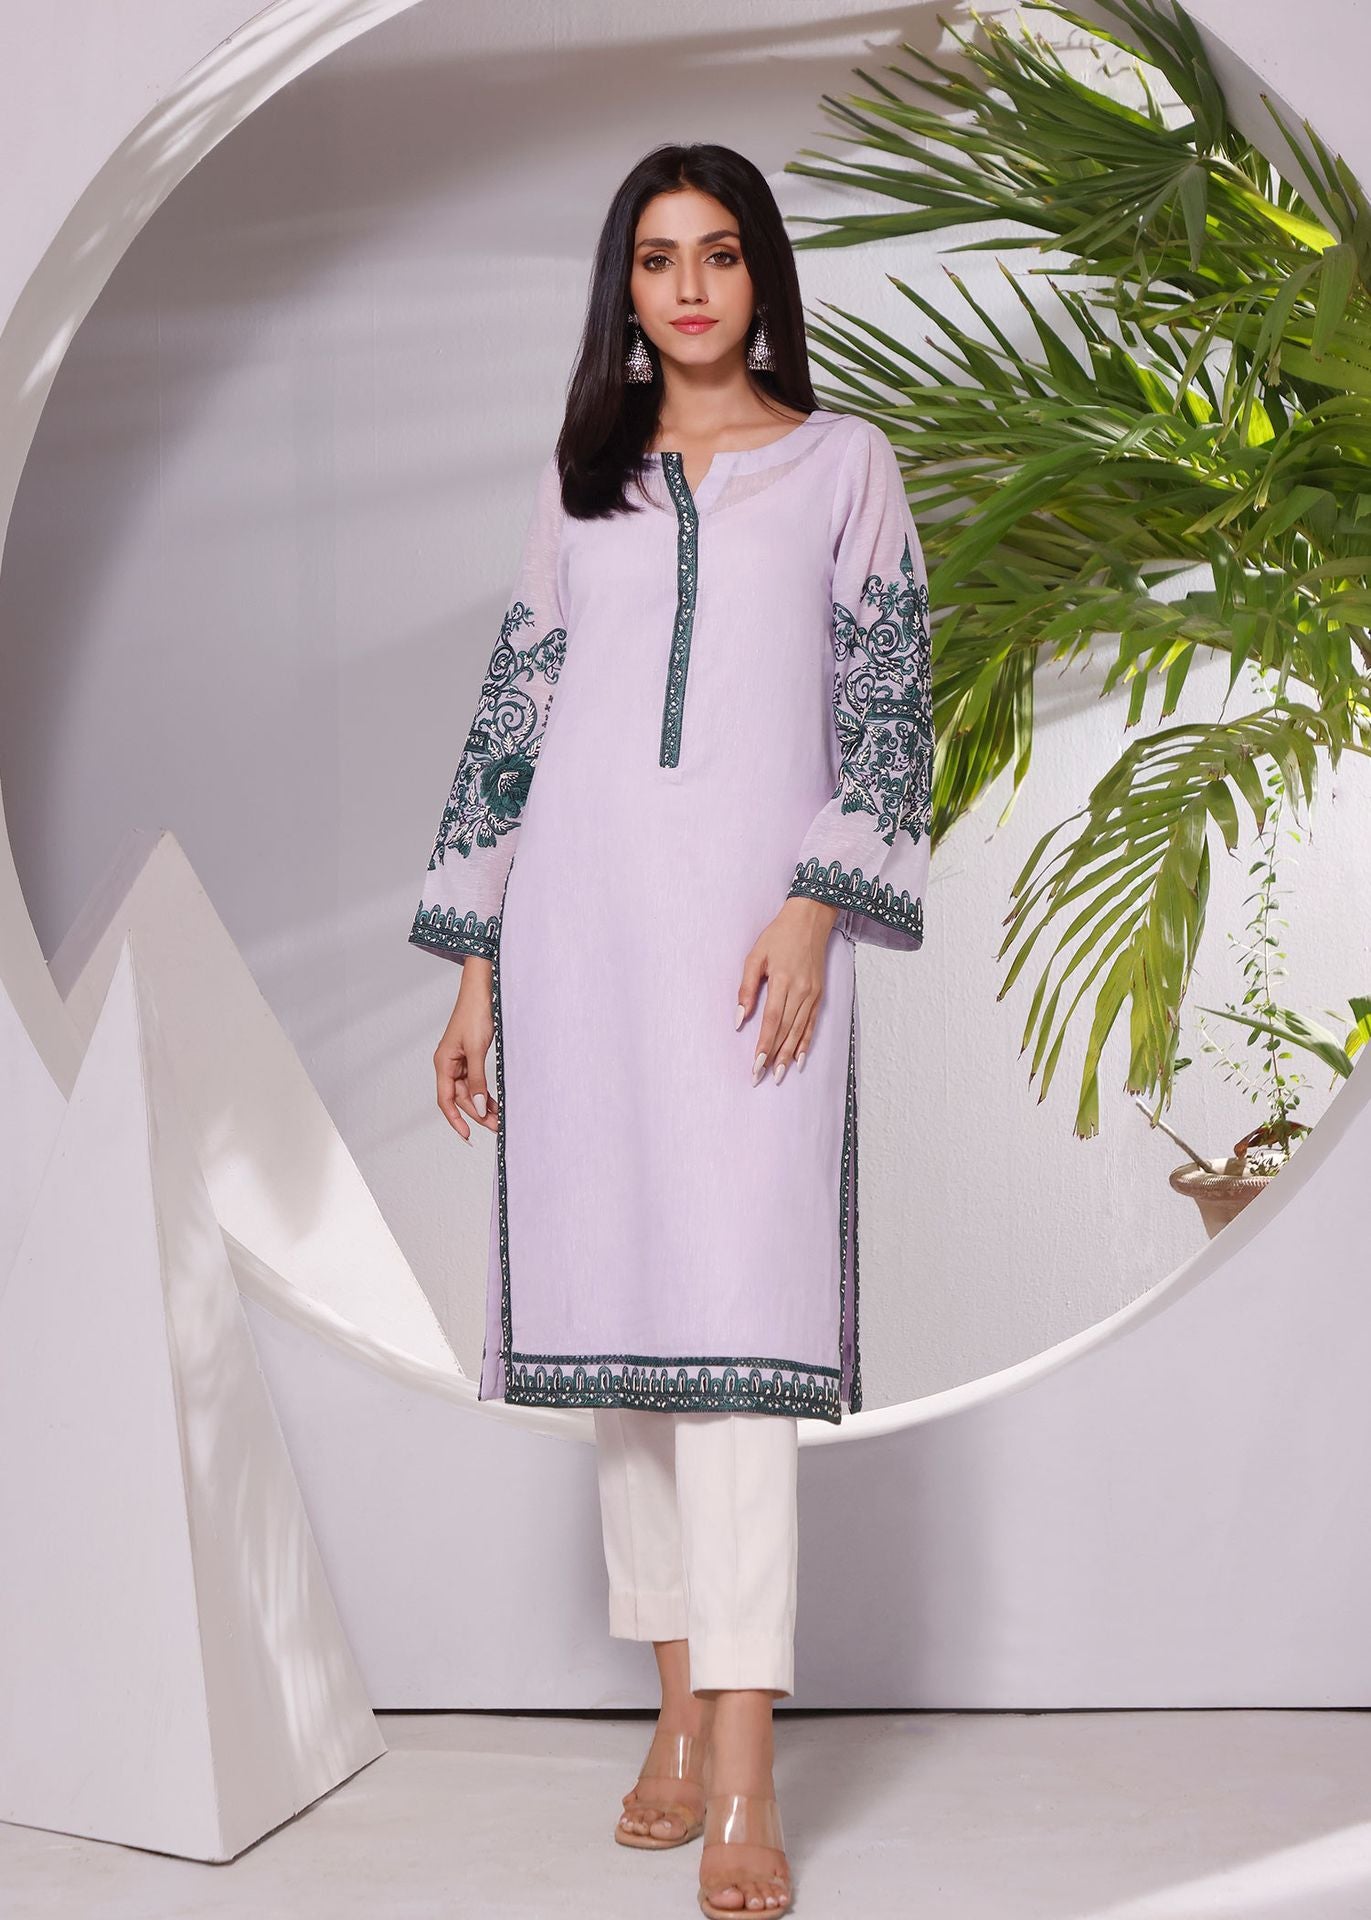 Occasion wear | Rizwan Beyg | Karandi | Summer/Spring Collection